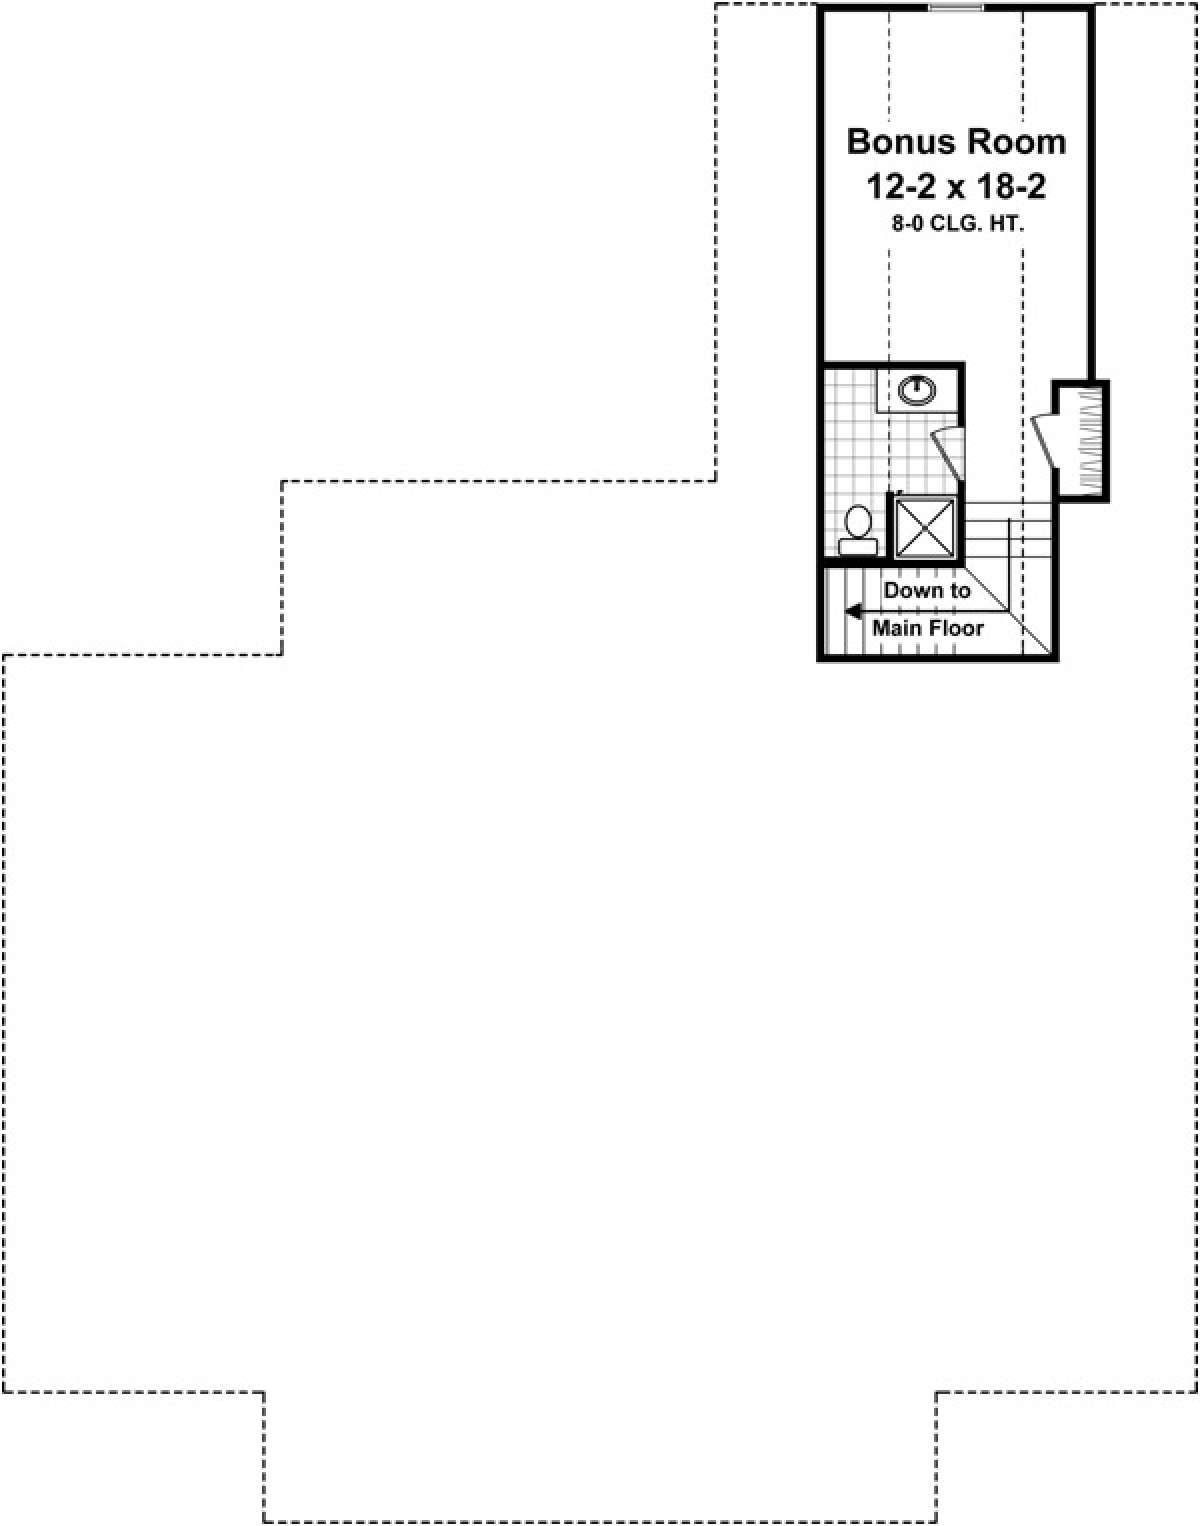 Bonus Room for House Plan #348-00236